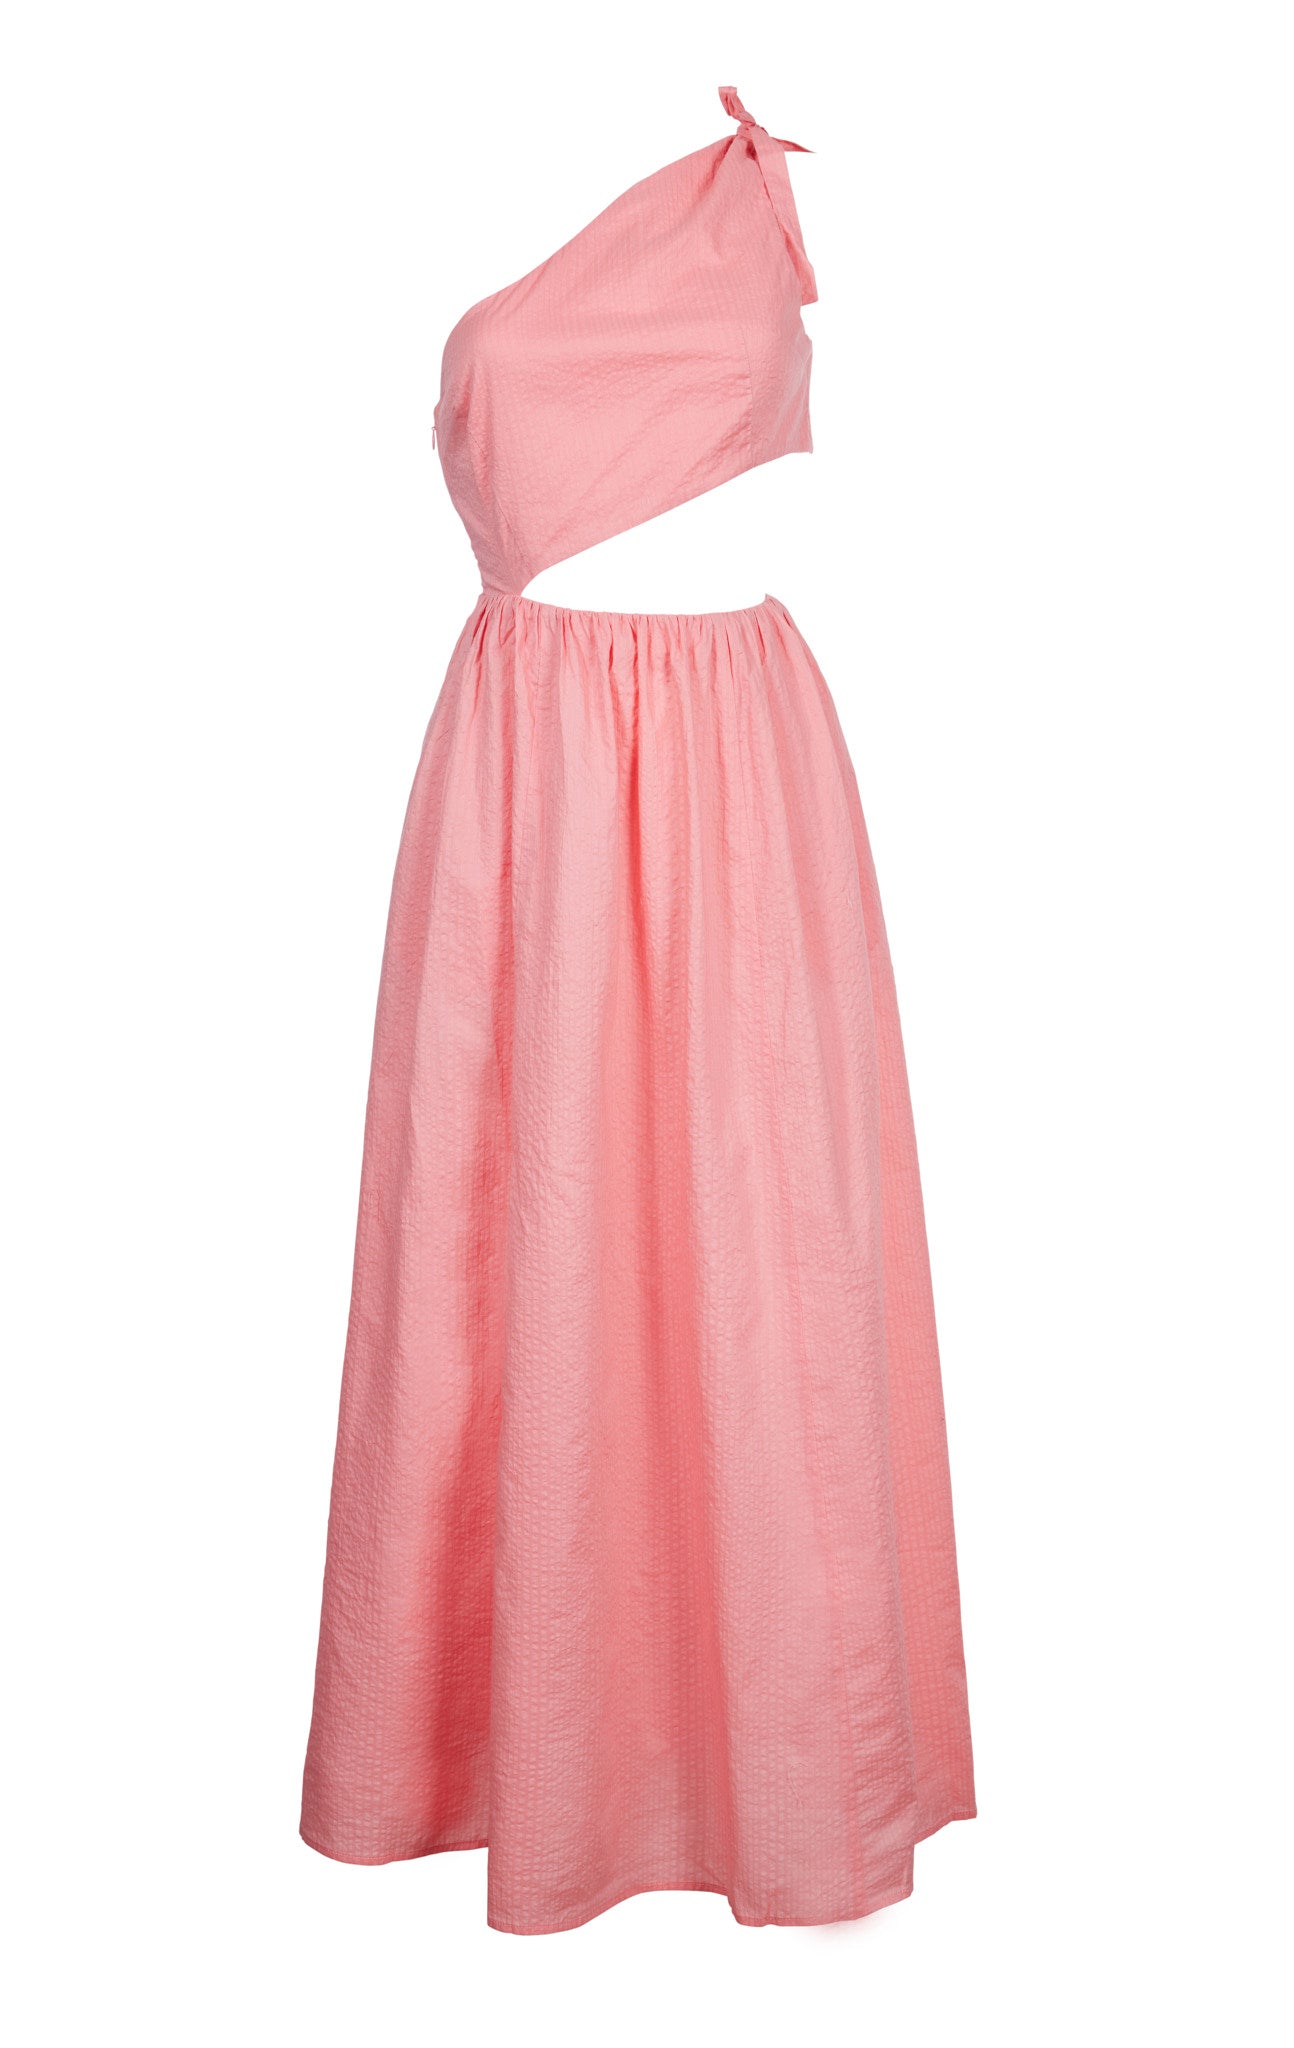 Alberobello Dress in Pink Sands